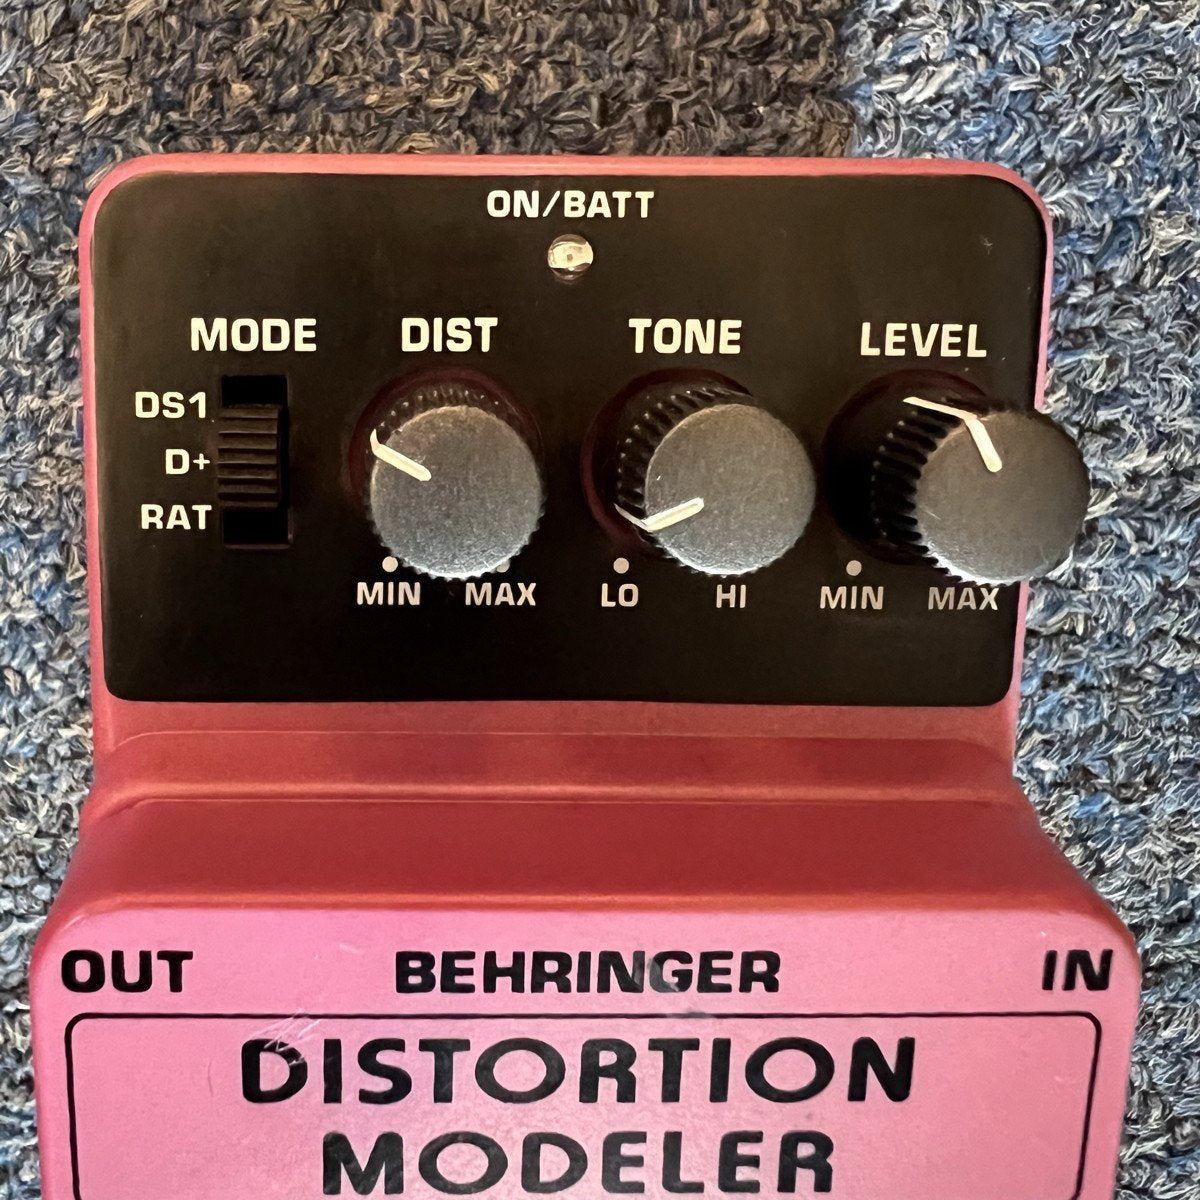 Behringer DM100 Distortion Modeler Effects Pedal used